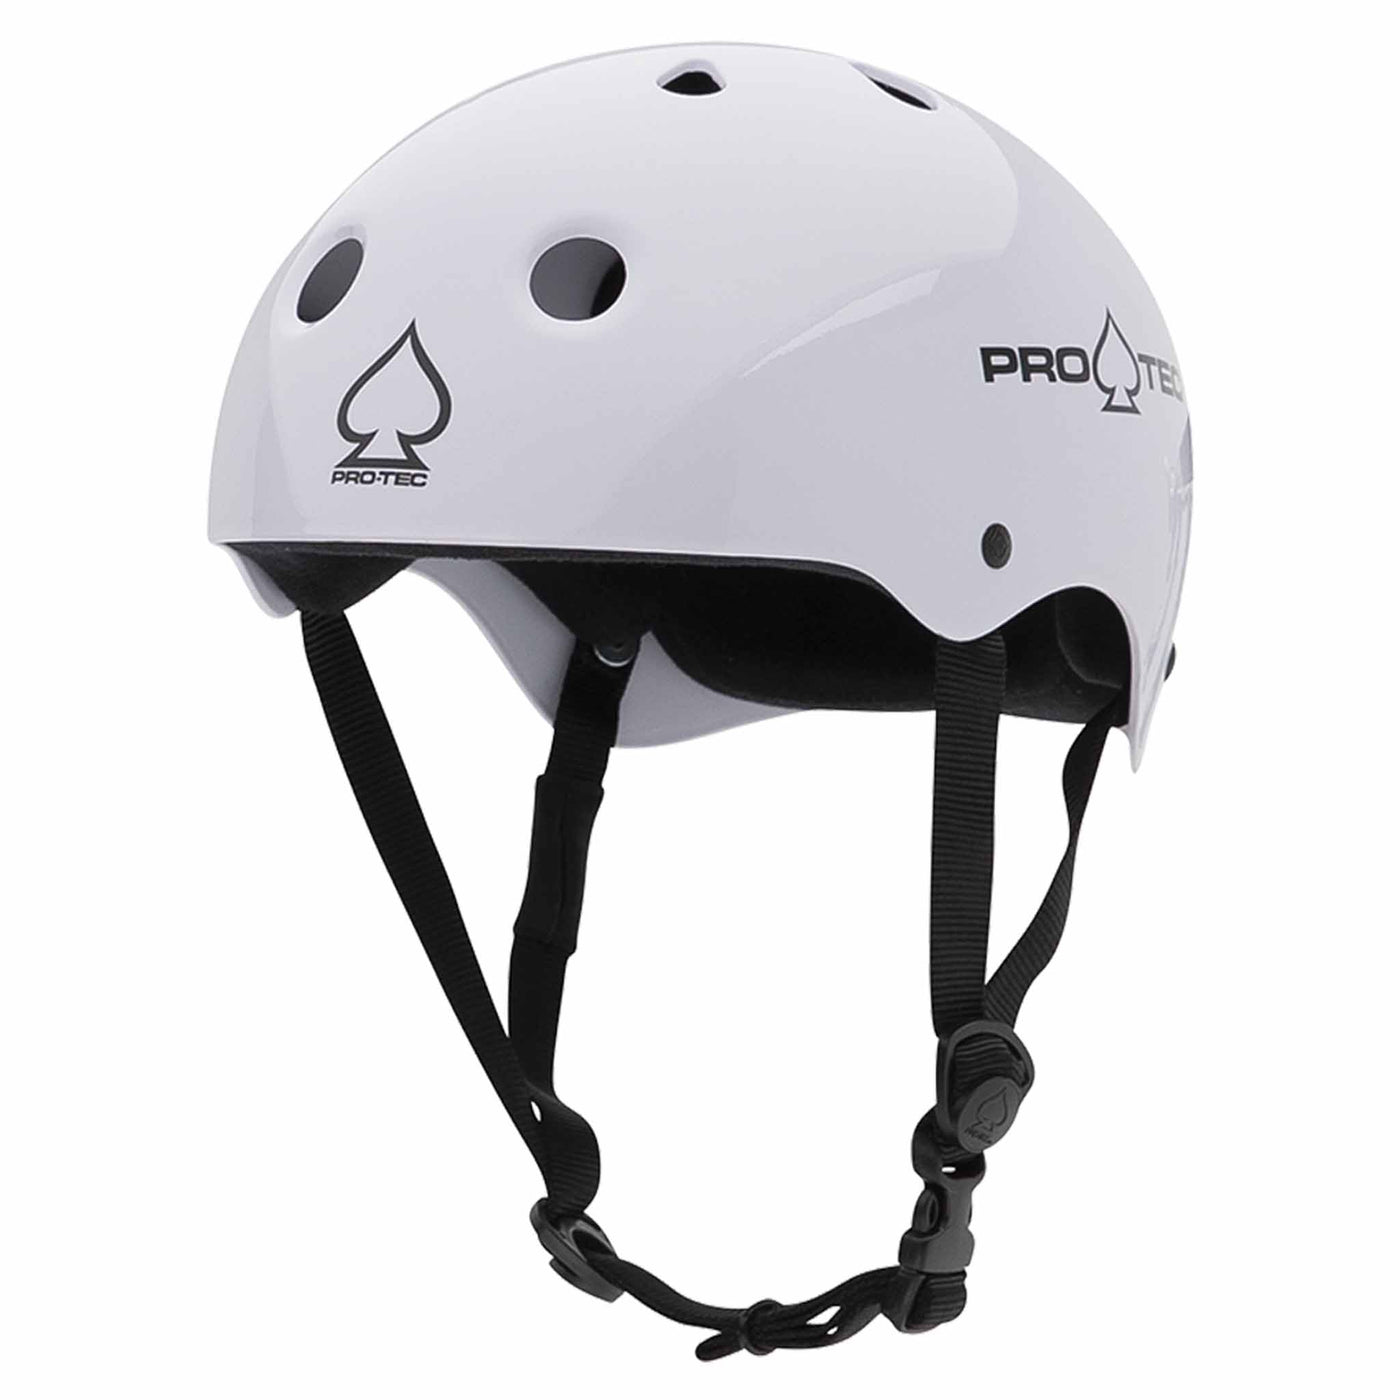 Protec Classic Gloss White Skate Helmet